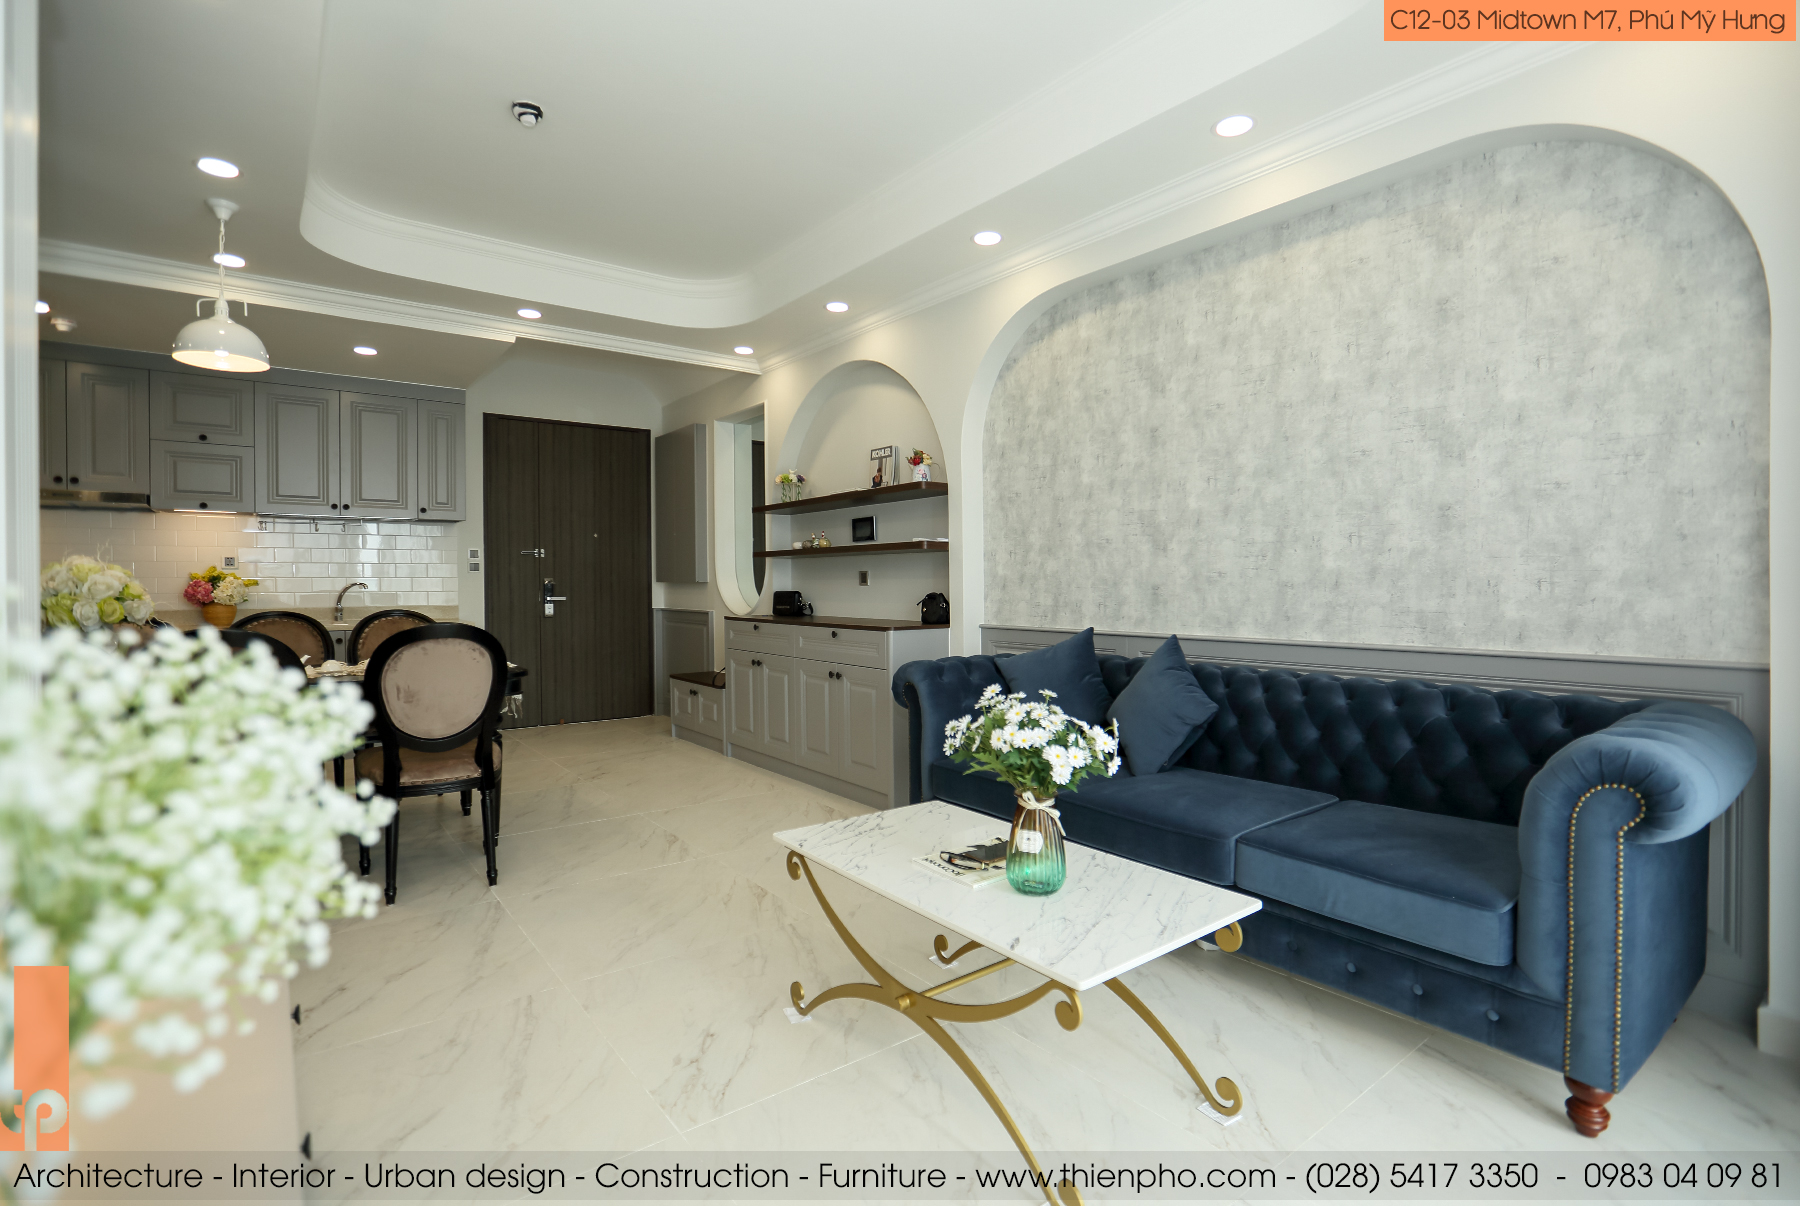 Hình ảnh thực tế thi công hoàn thiện nội thất căn hộ C12-03 Midtown M7, Phú Mỹ Hưng